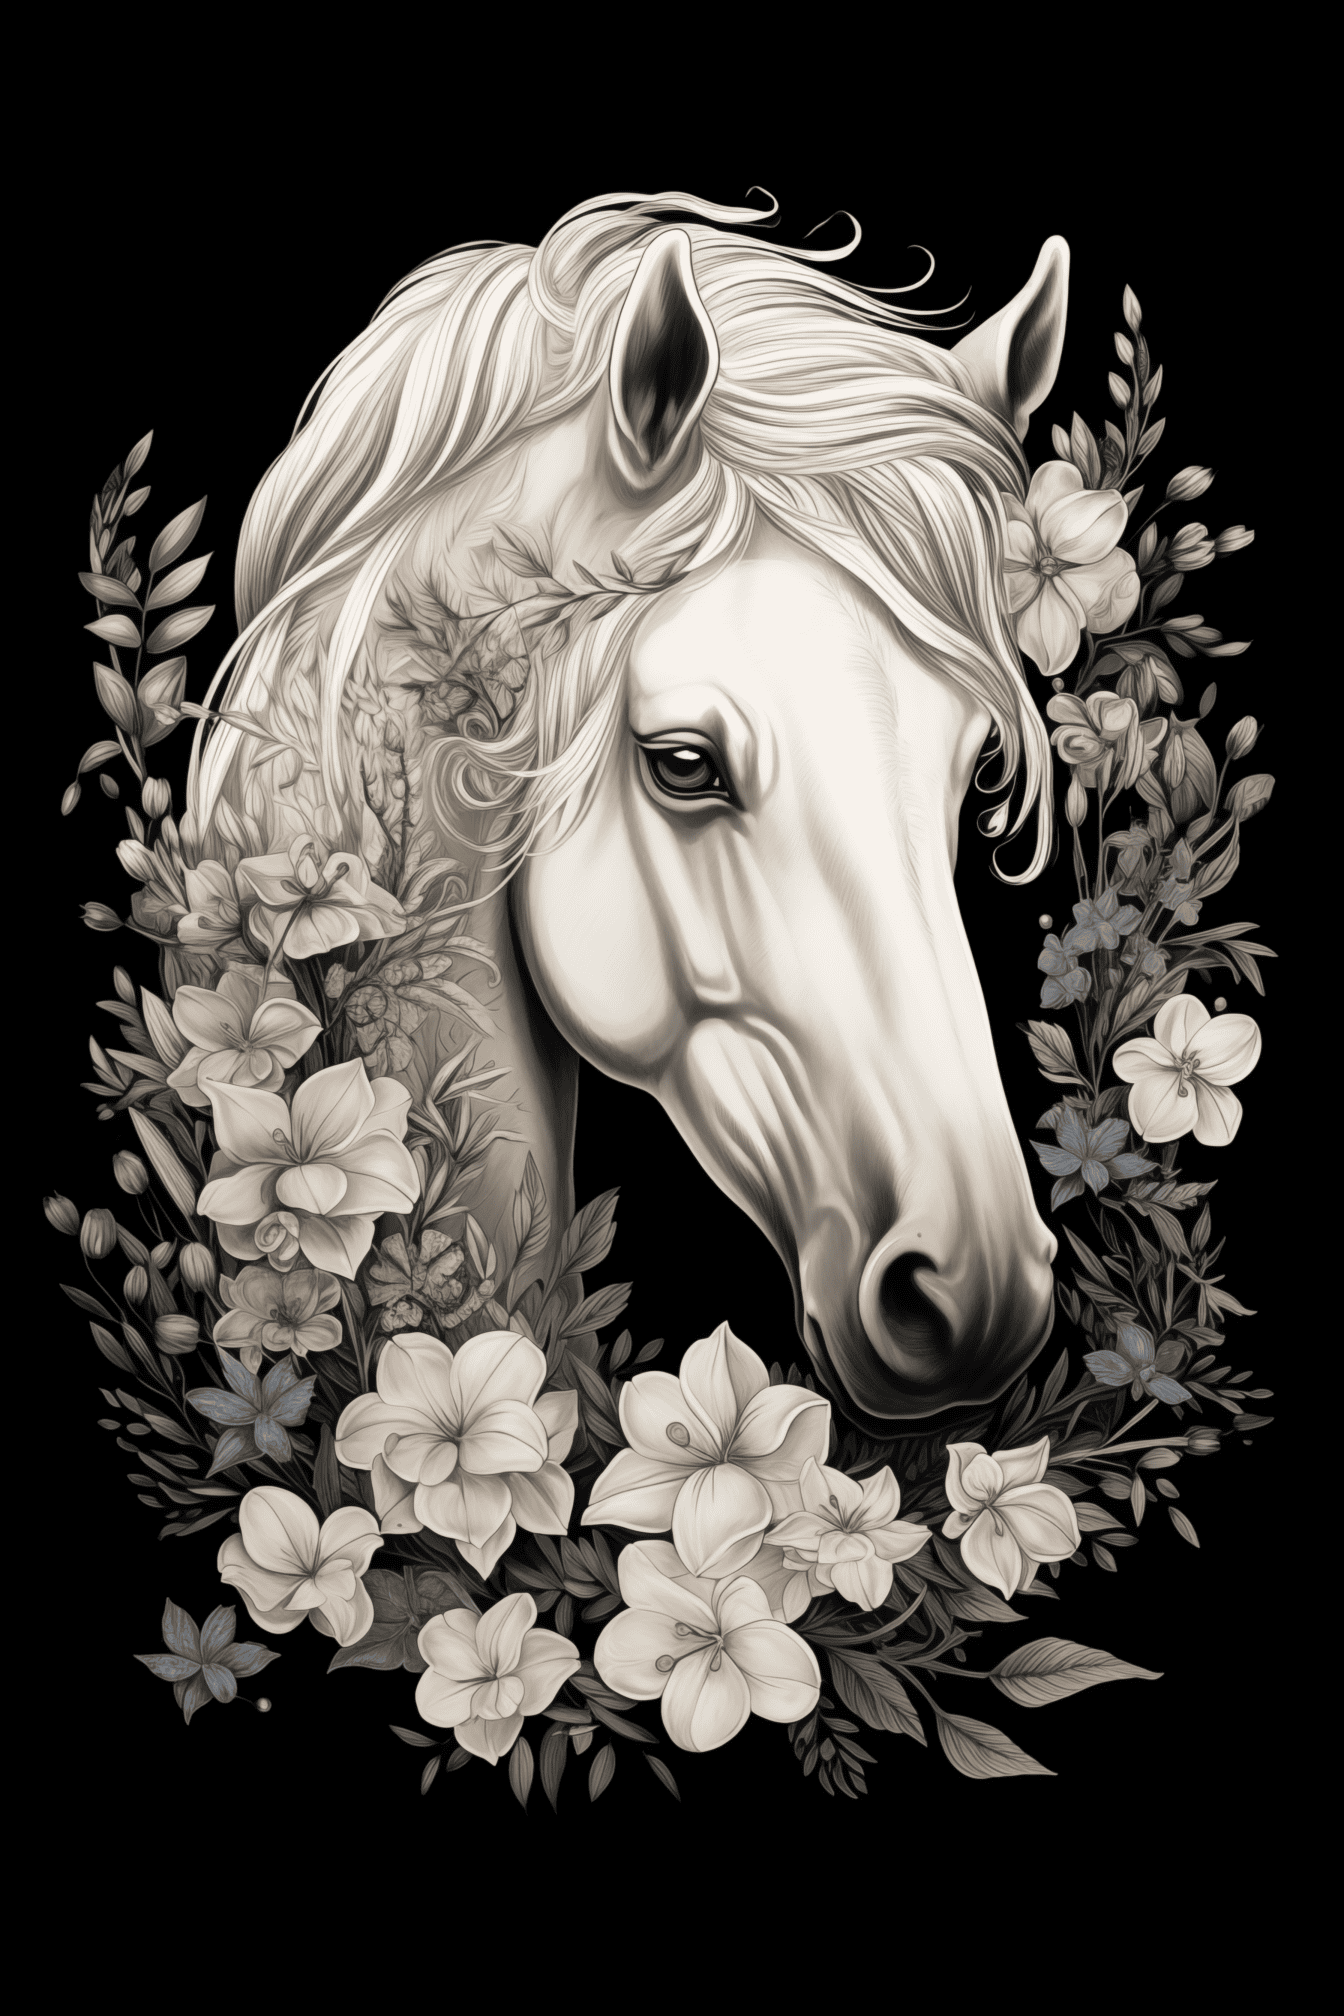 Schöne schwarz-weiße grafische Illustration eines Kopfes eines weißen Pferdes mit Blumen